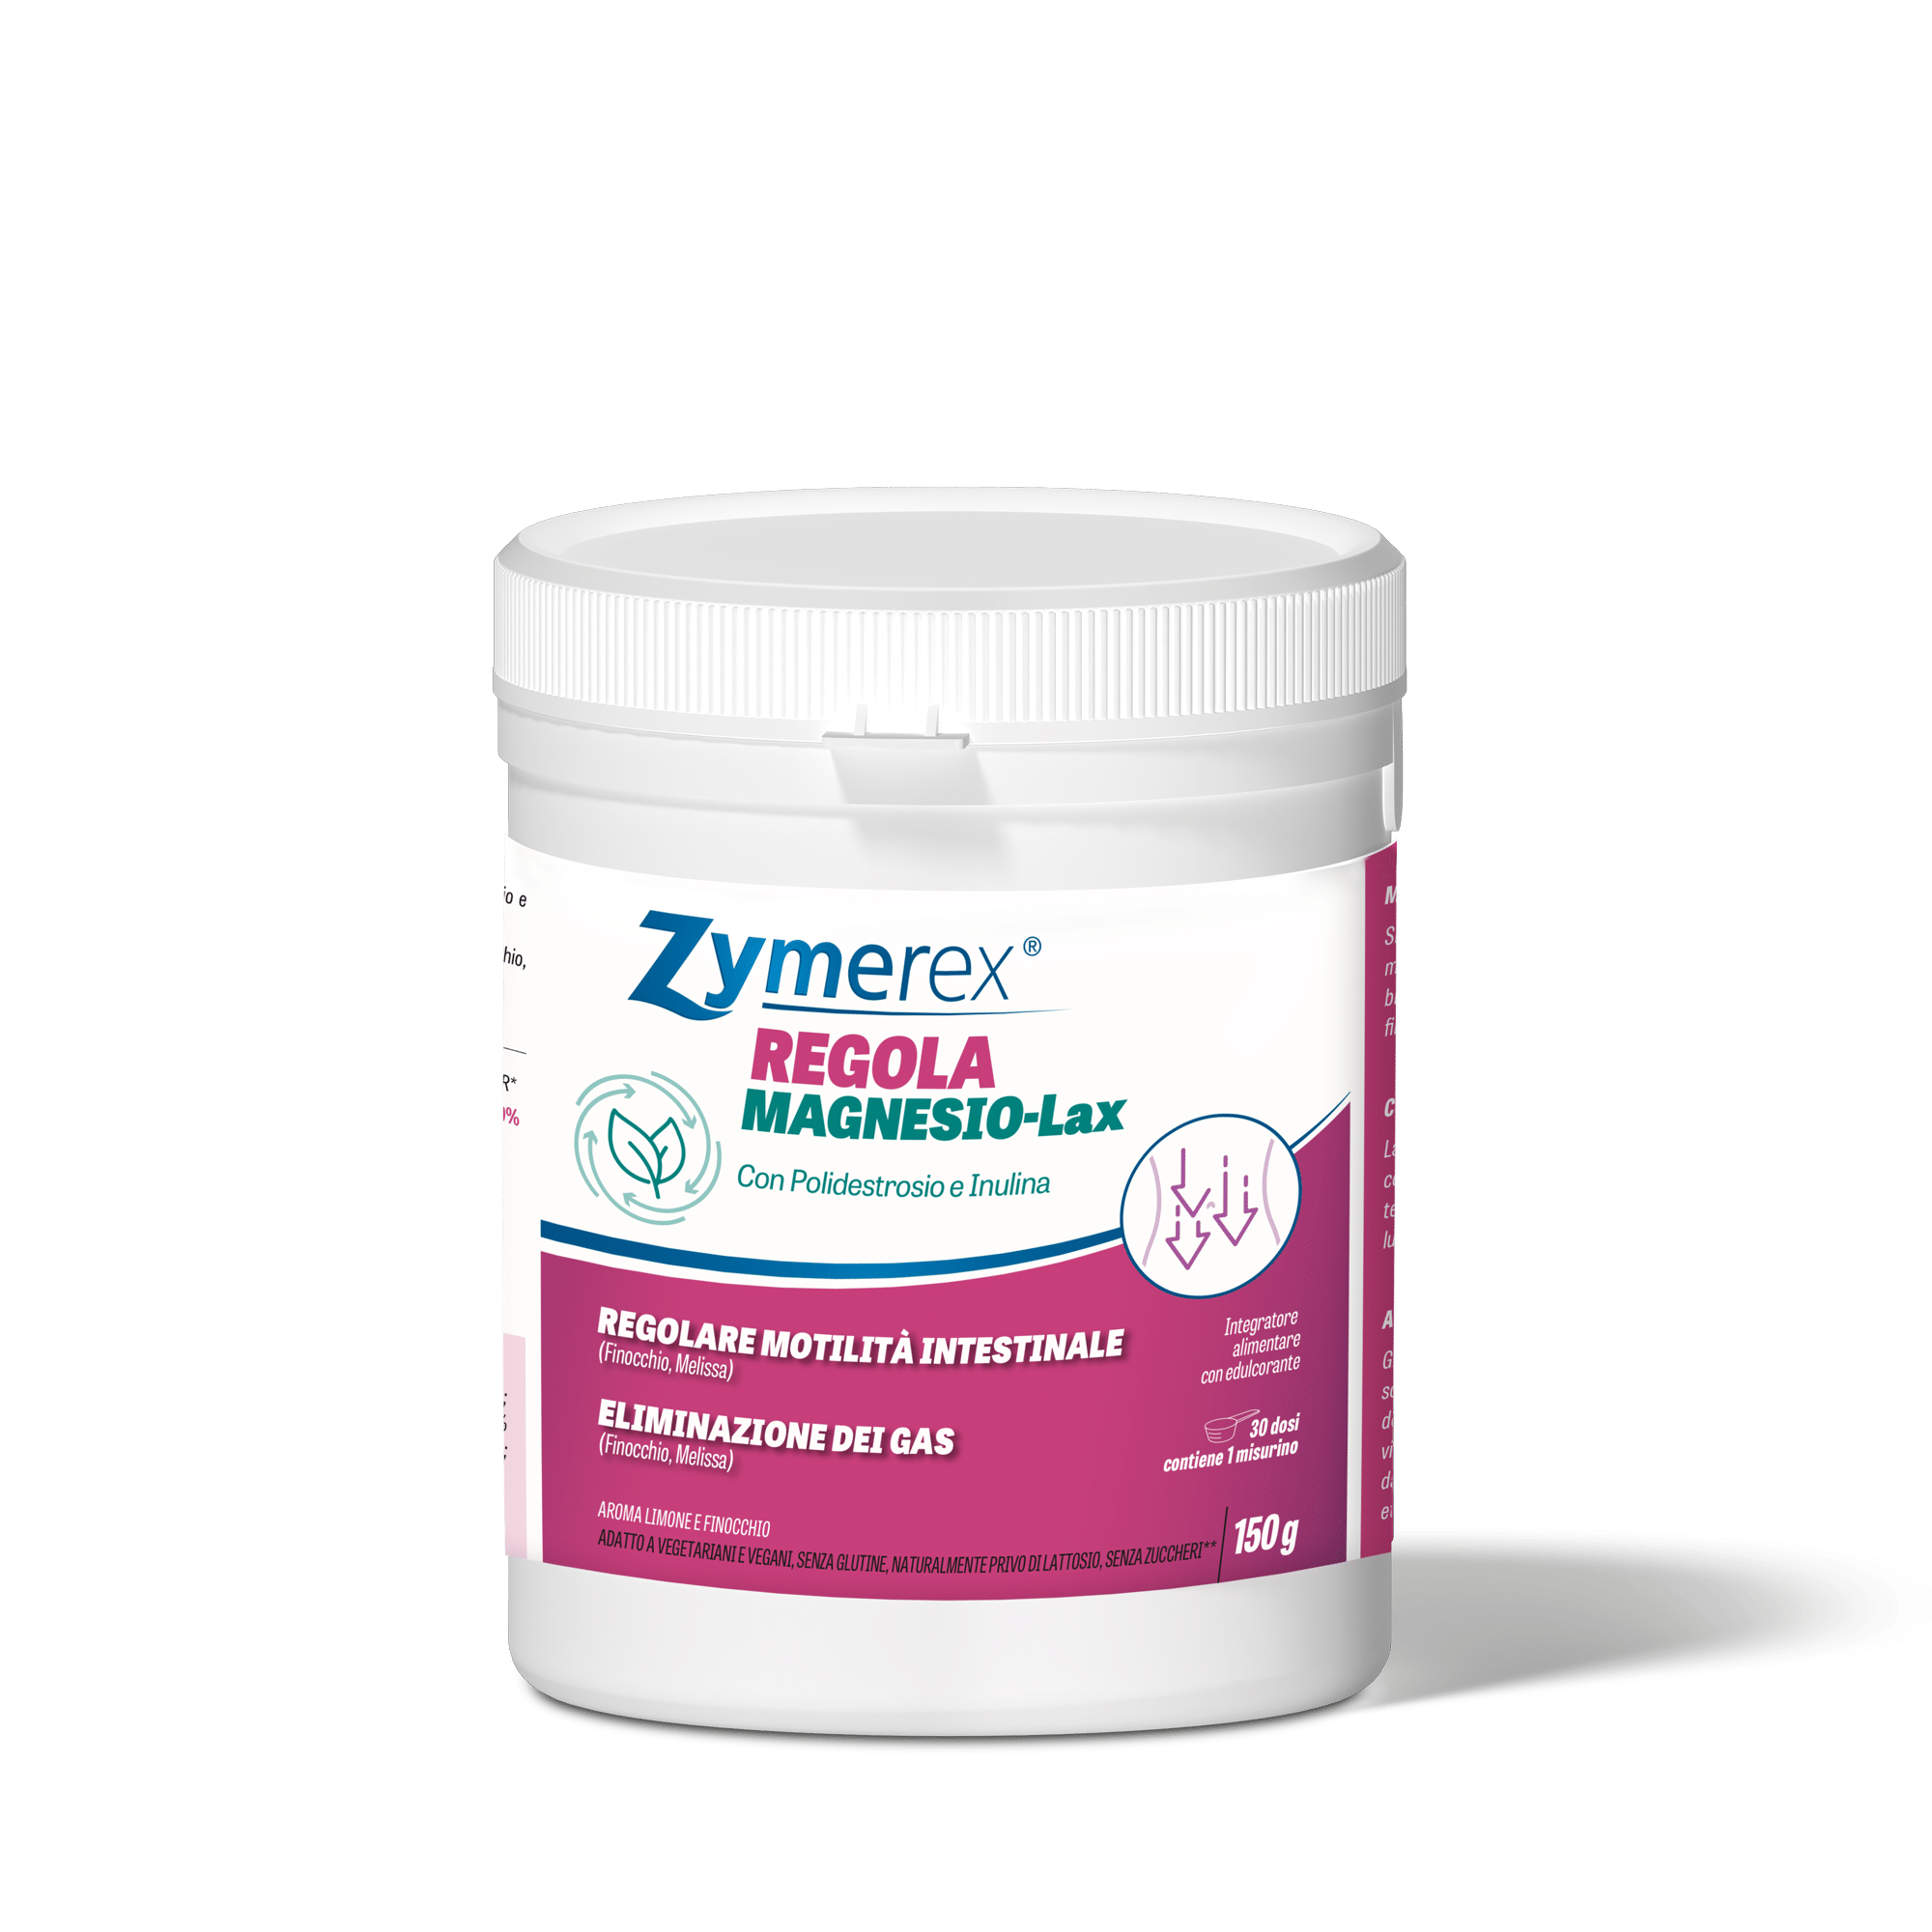 zymerex regola magnesio-lax